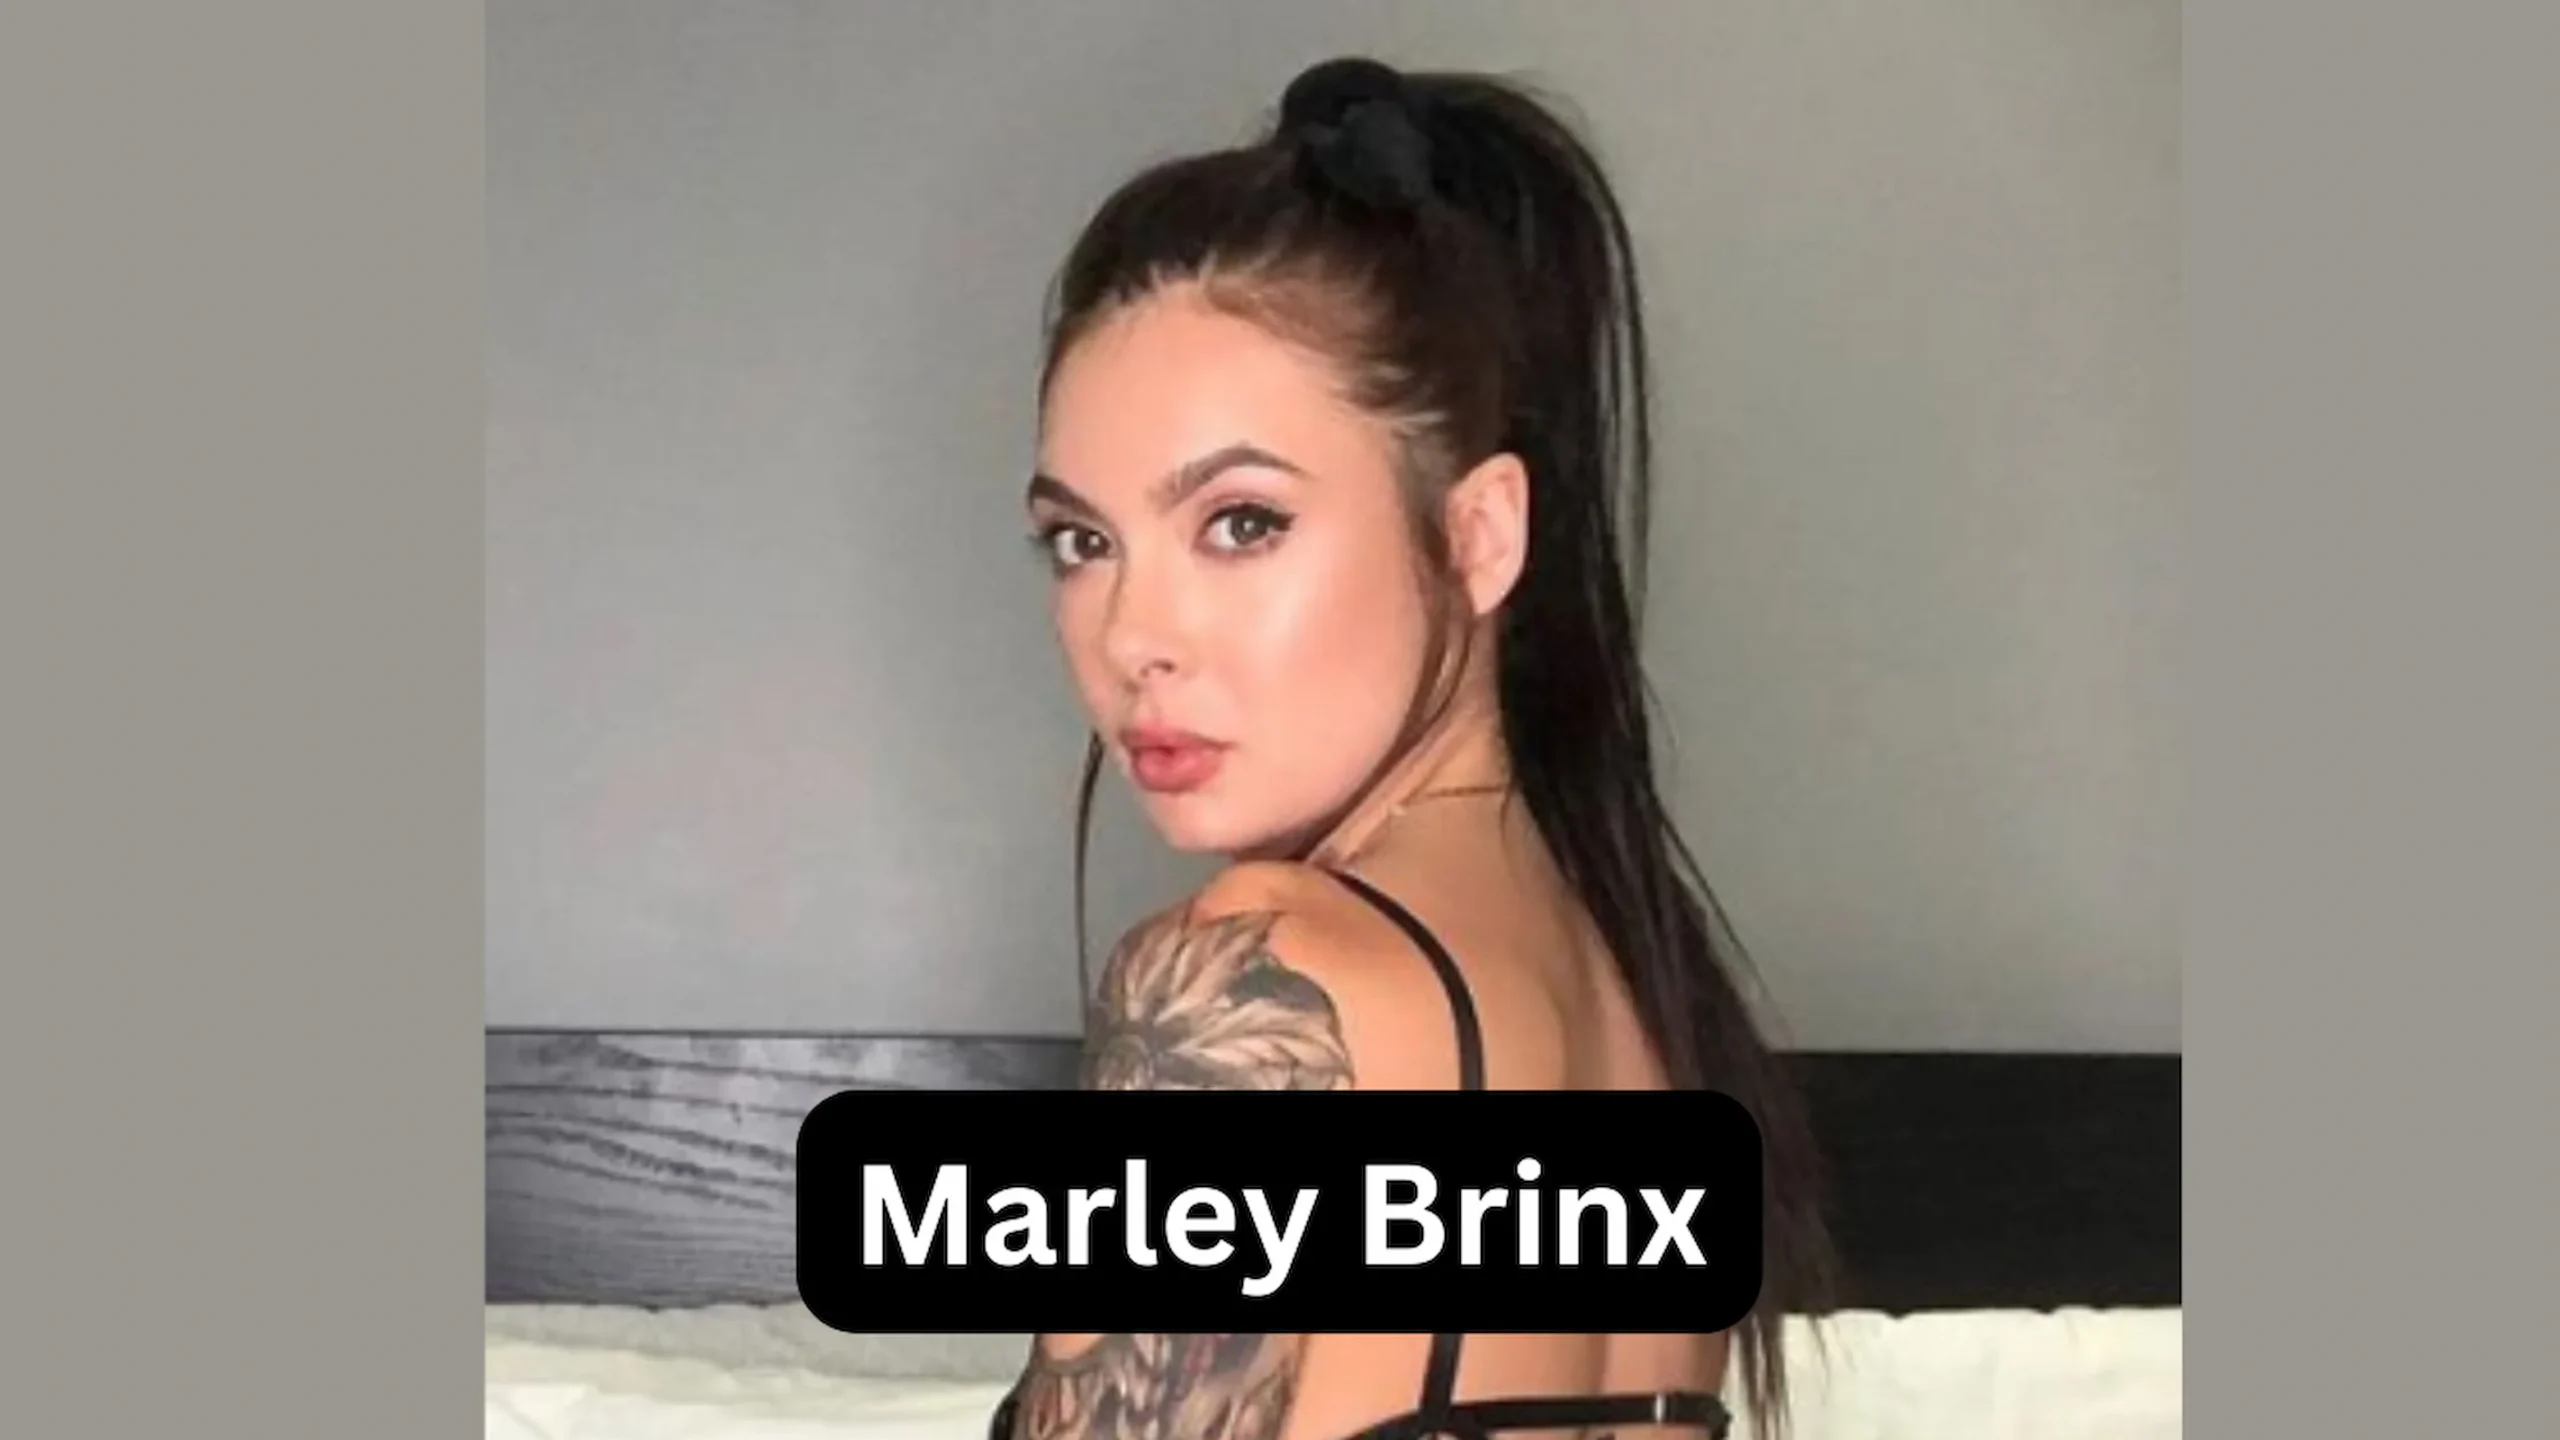 Best of Marley brinx wiki